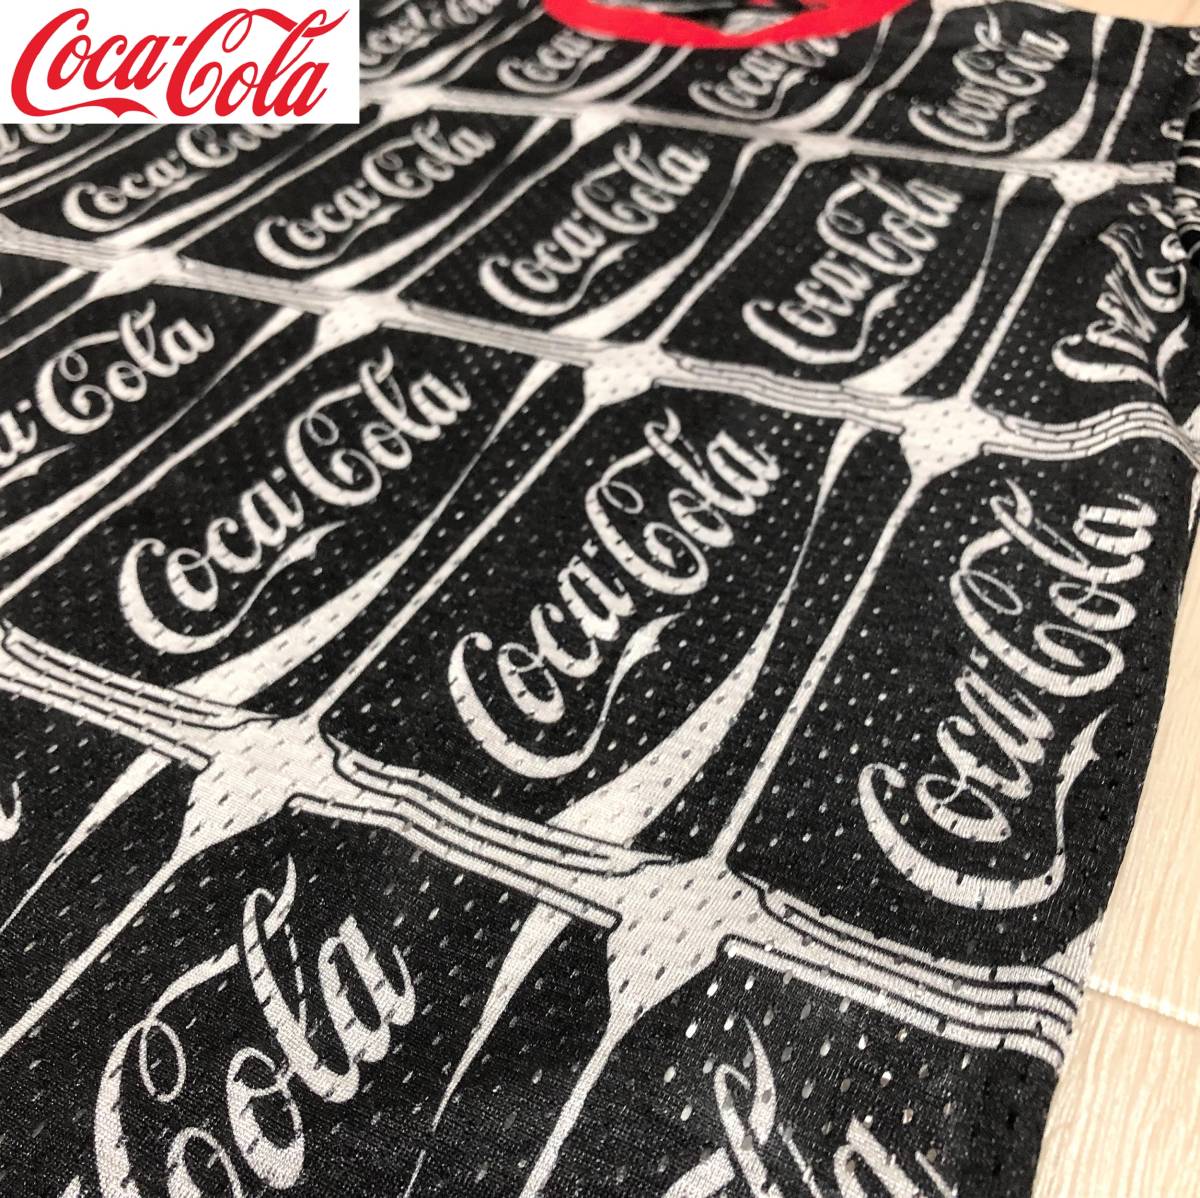 Coca-Cola × JOYRICH Collab Mesh T-Shirt コカ・コーラ × ジョイリッチ コラボ メッシュ Tシャツ サイズS ブラック×ホワイト 半袖 丸首